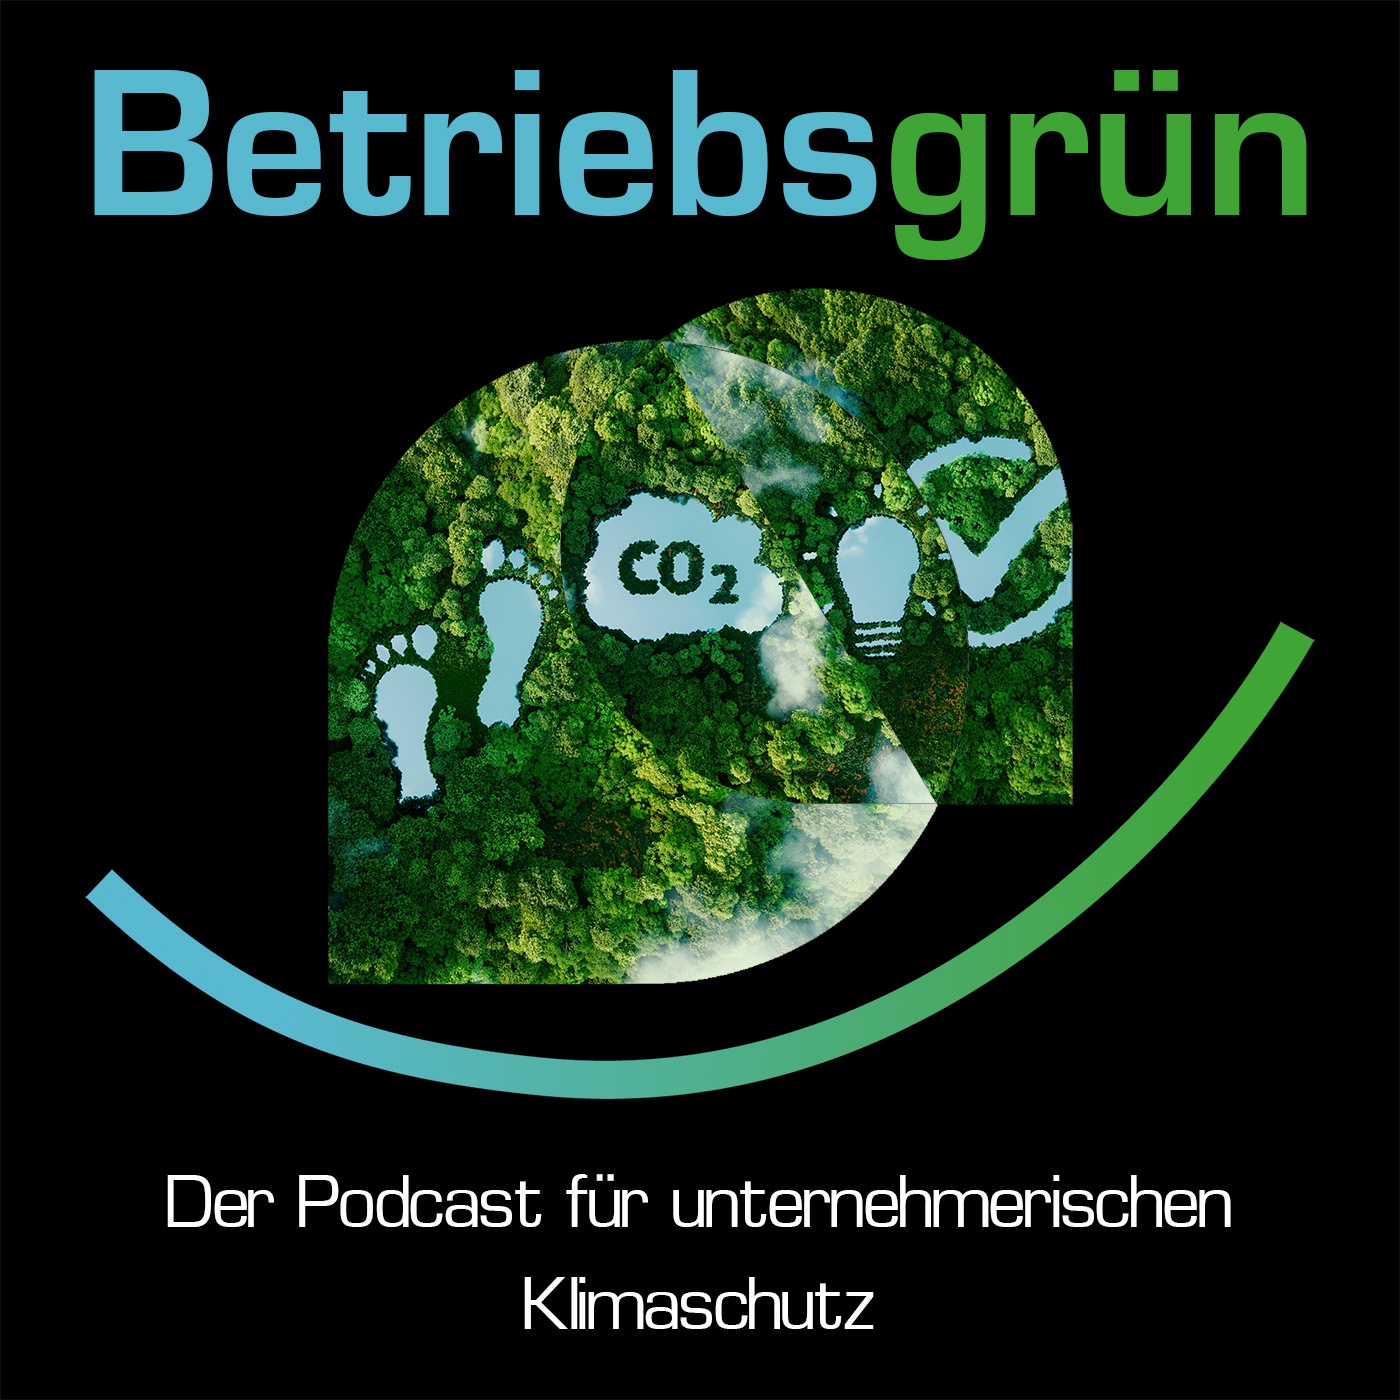 Betriebsgrün - Der Podcast für unternehmerischen Klimaschutz